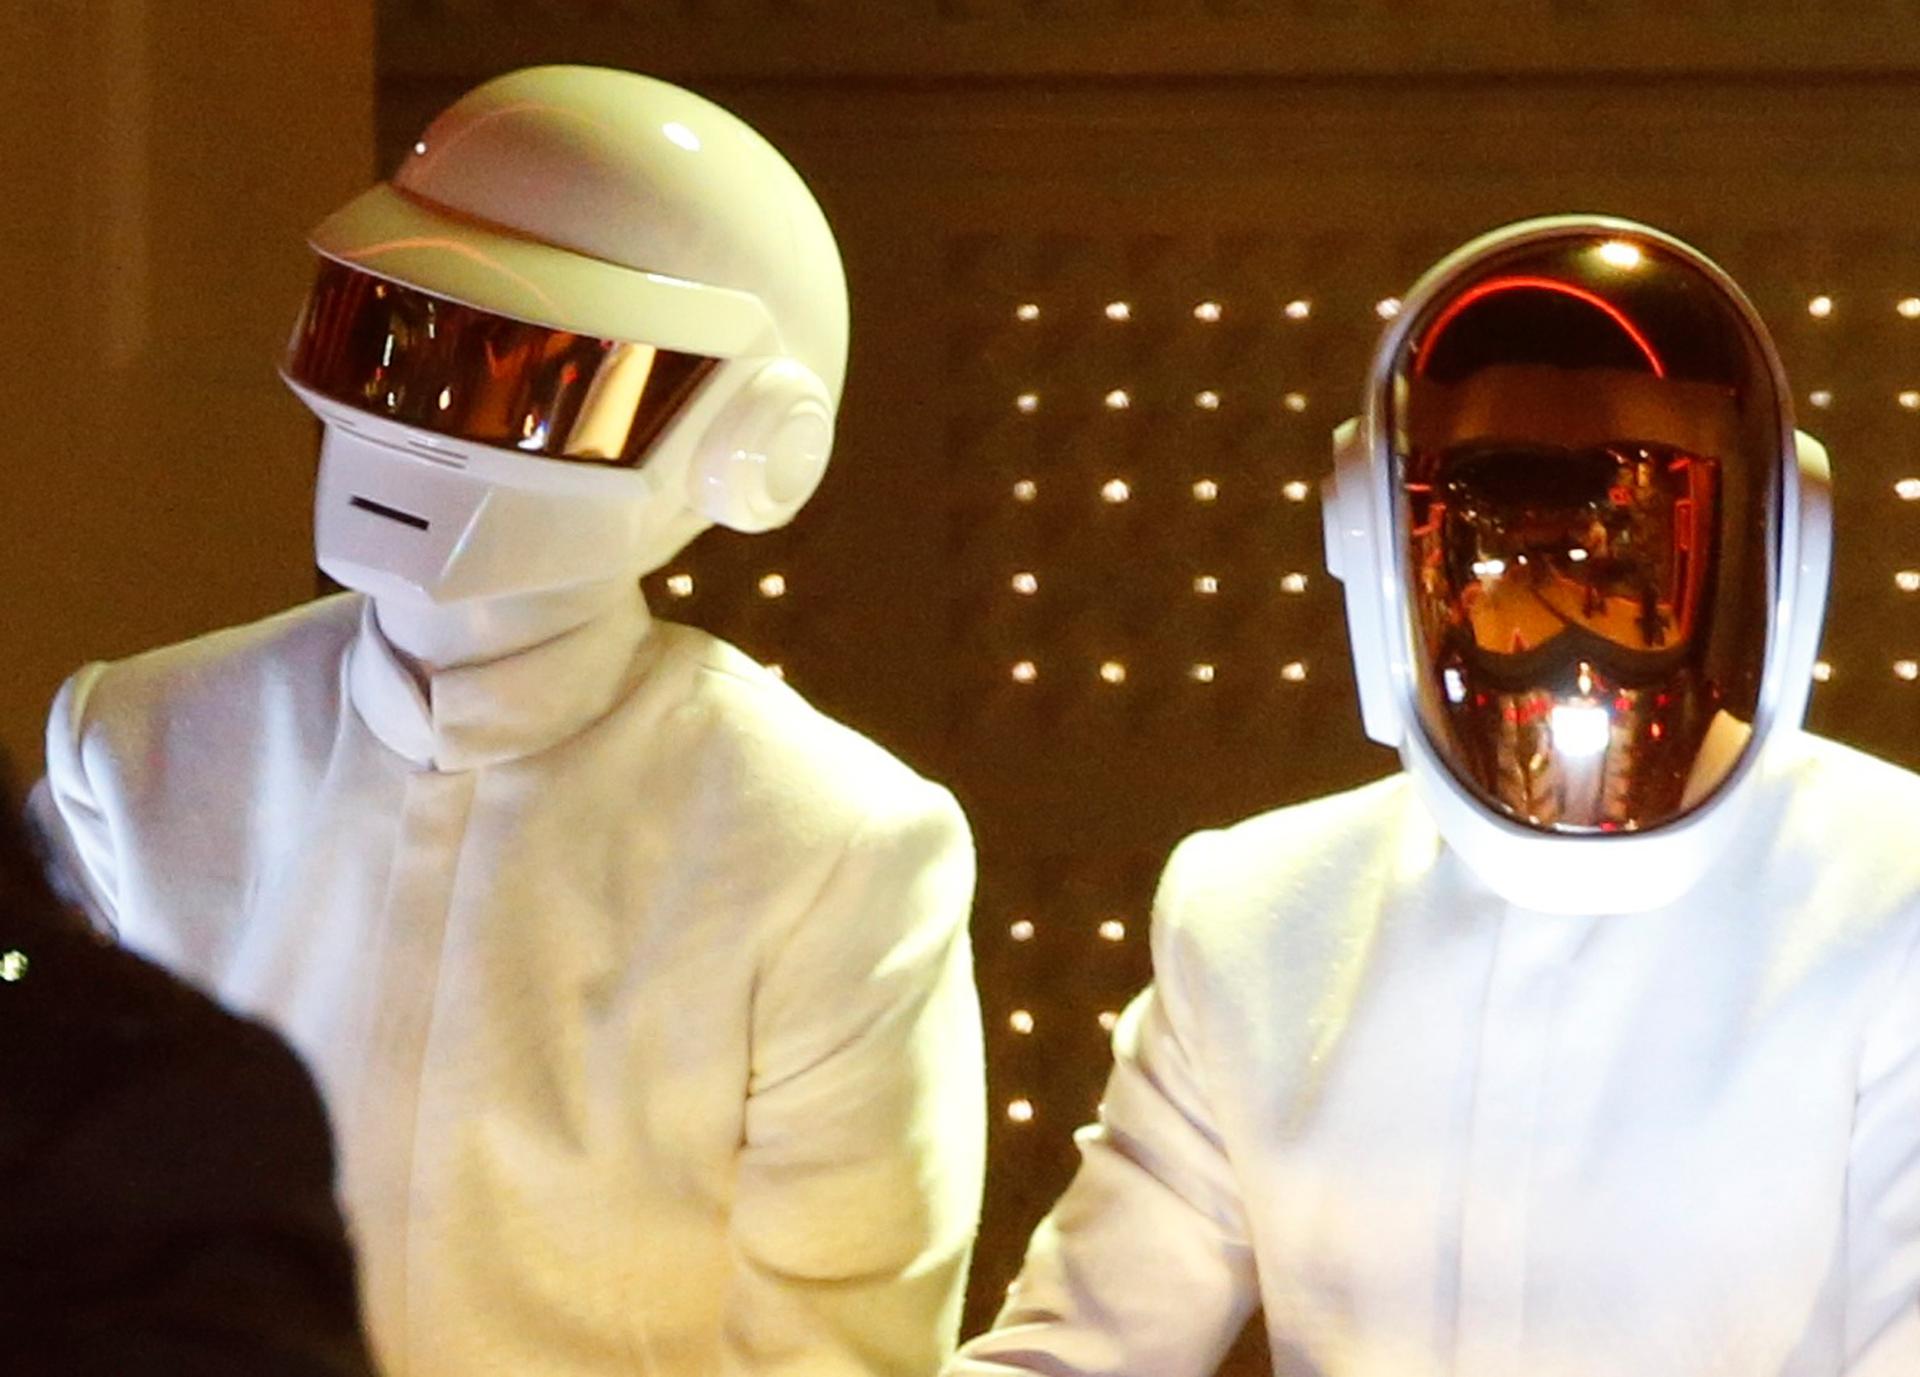 French electronic duo Daft Punk